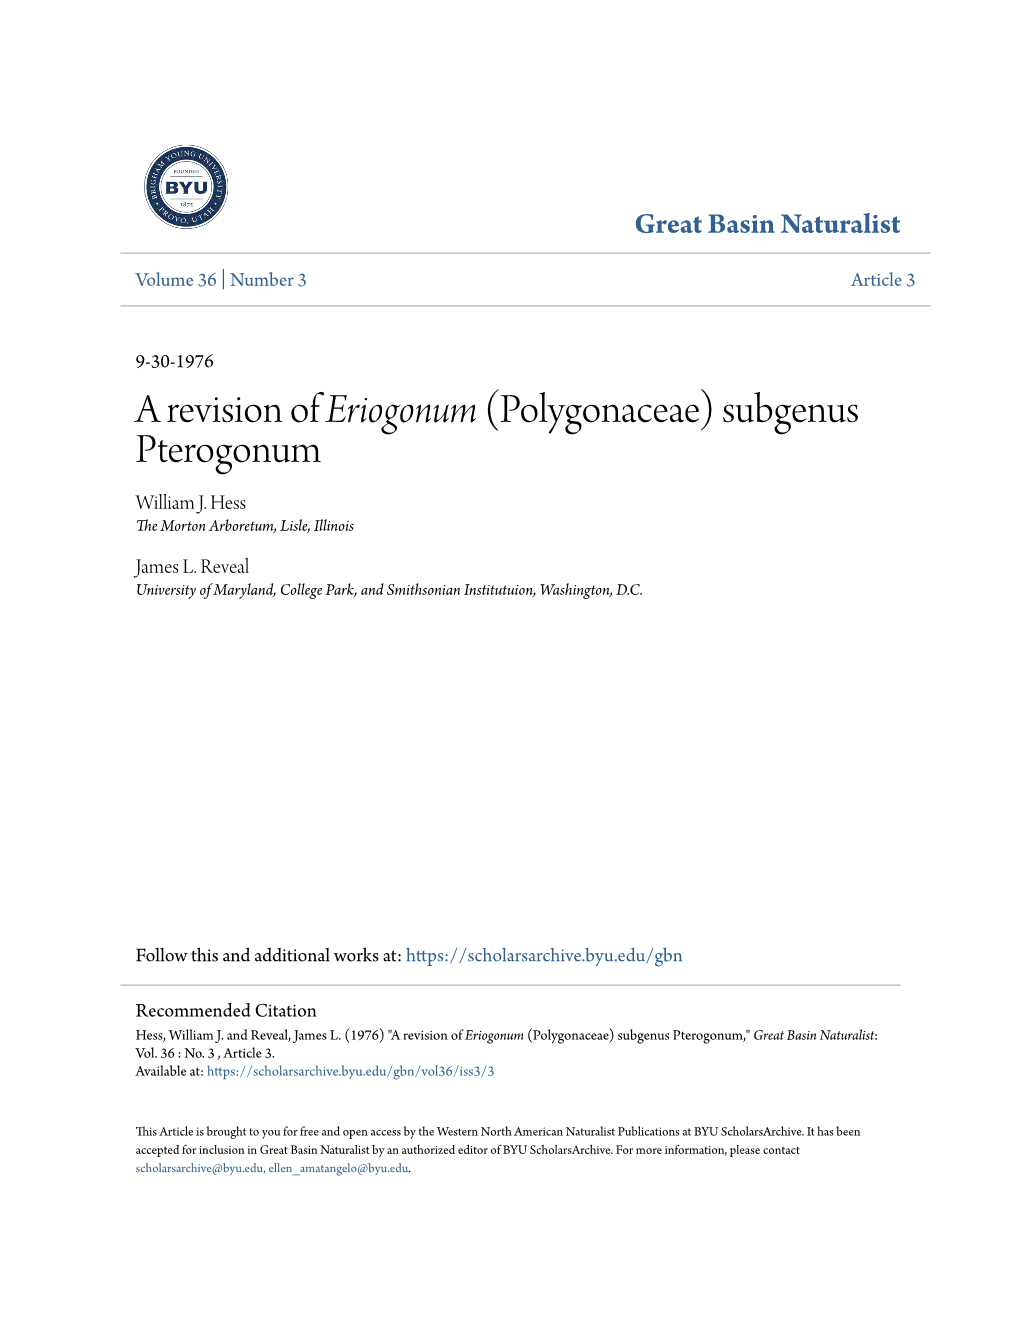 A Revision of Eriogonum (Polygonaceae) Subgenus Pterogonum William J